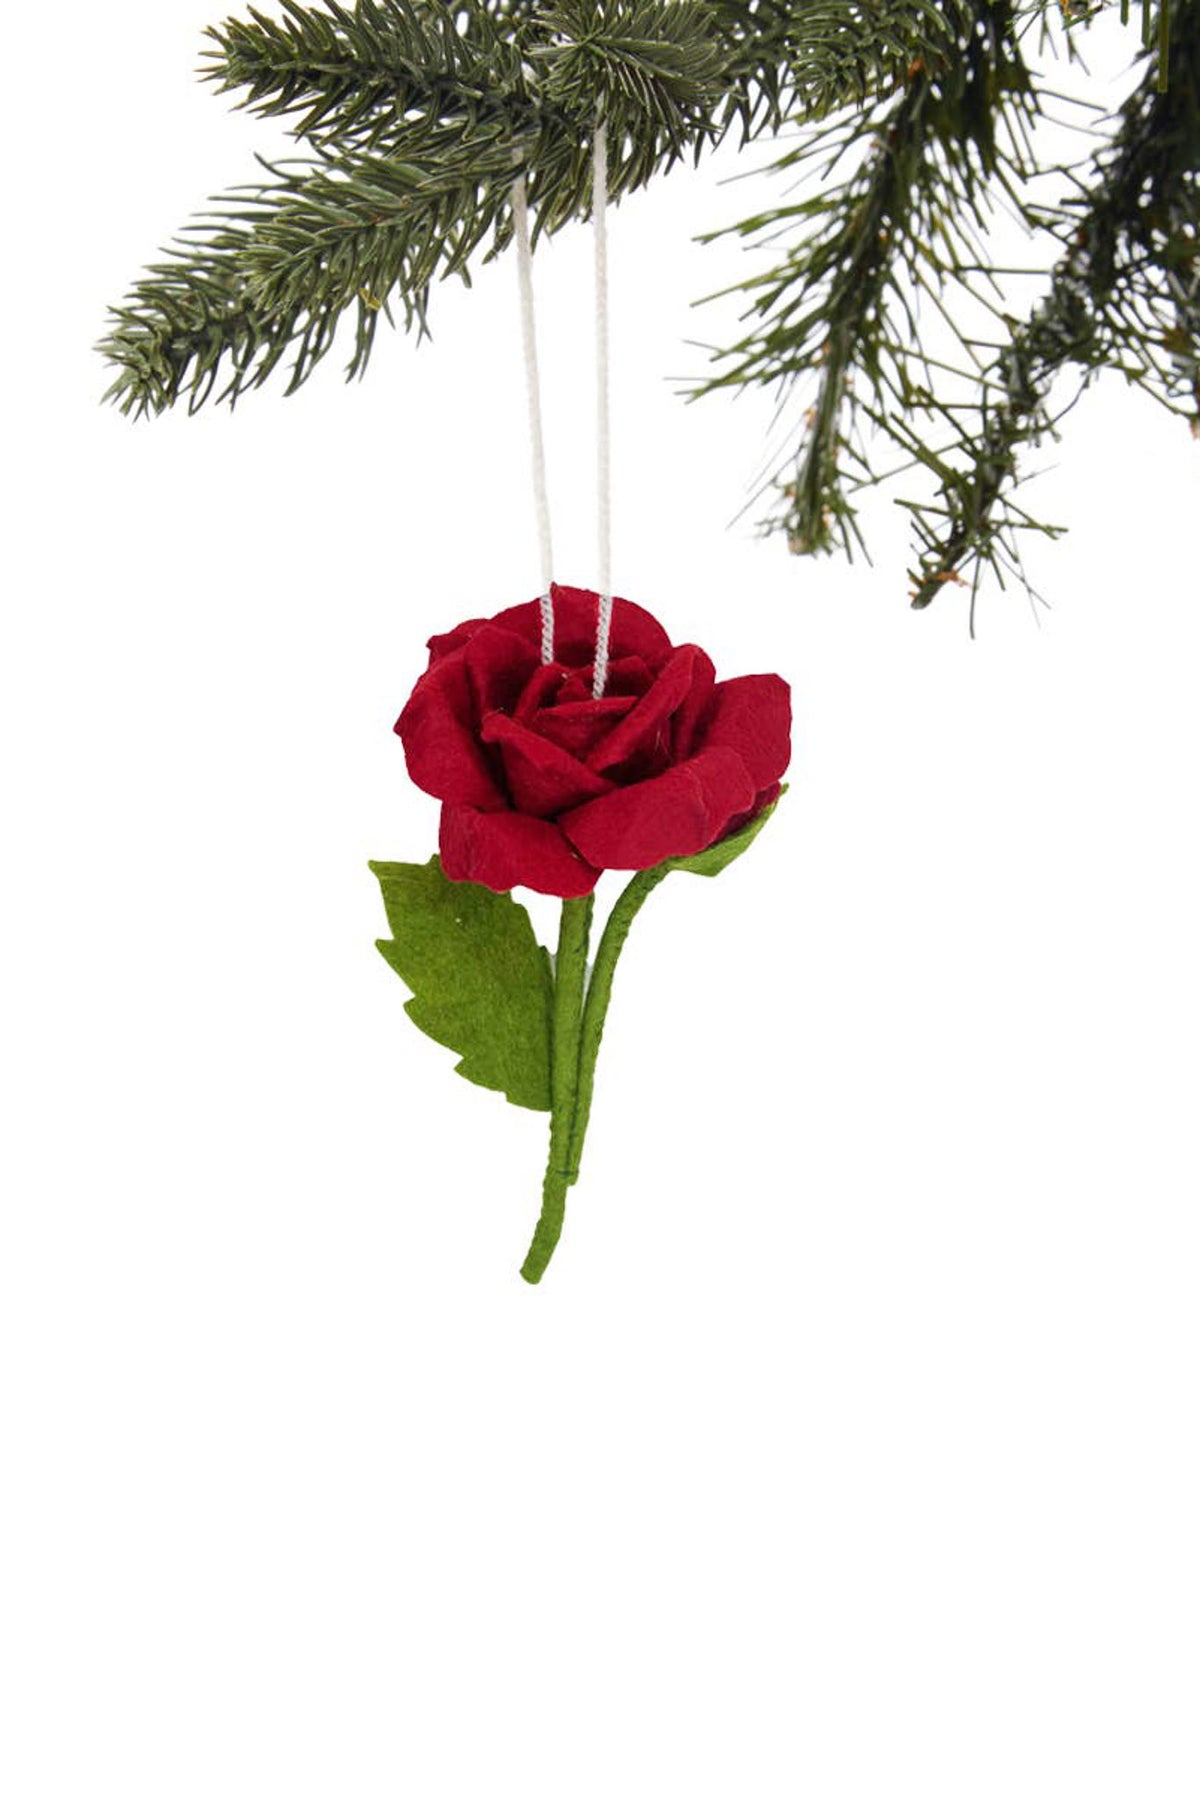 Silk Road Bazaar Red Rose Ornament